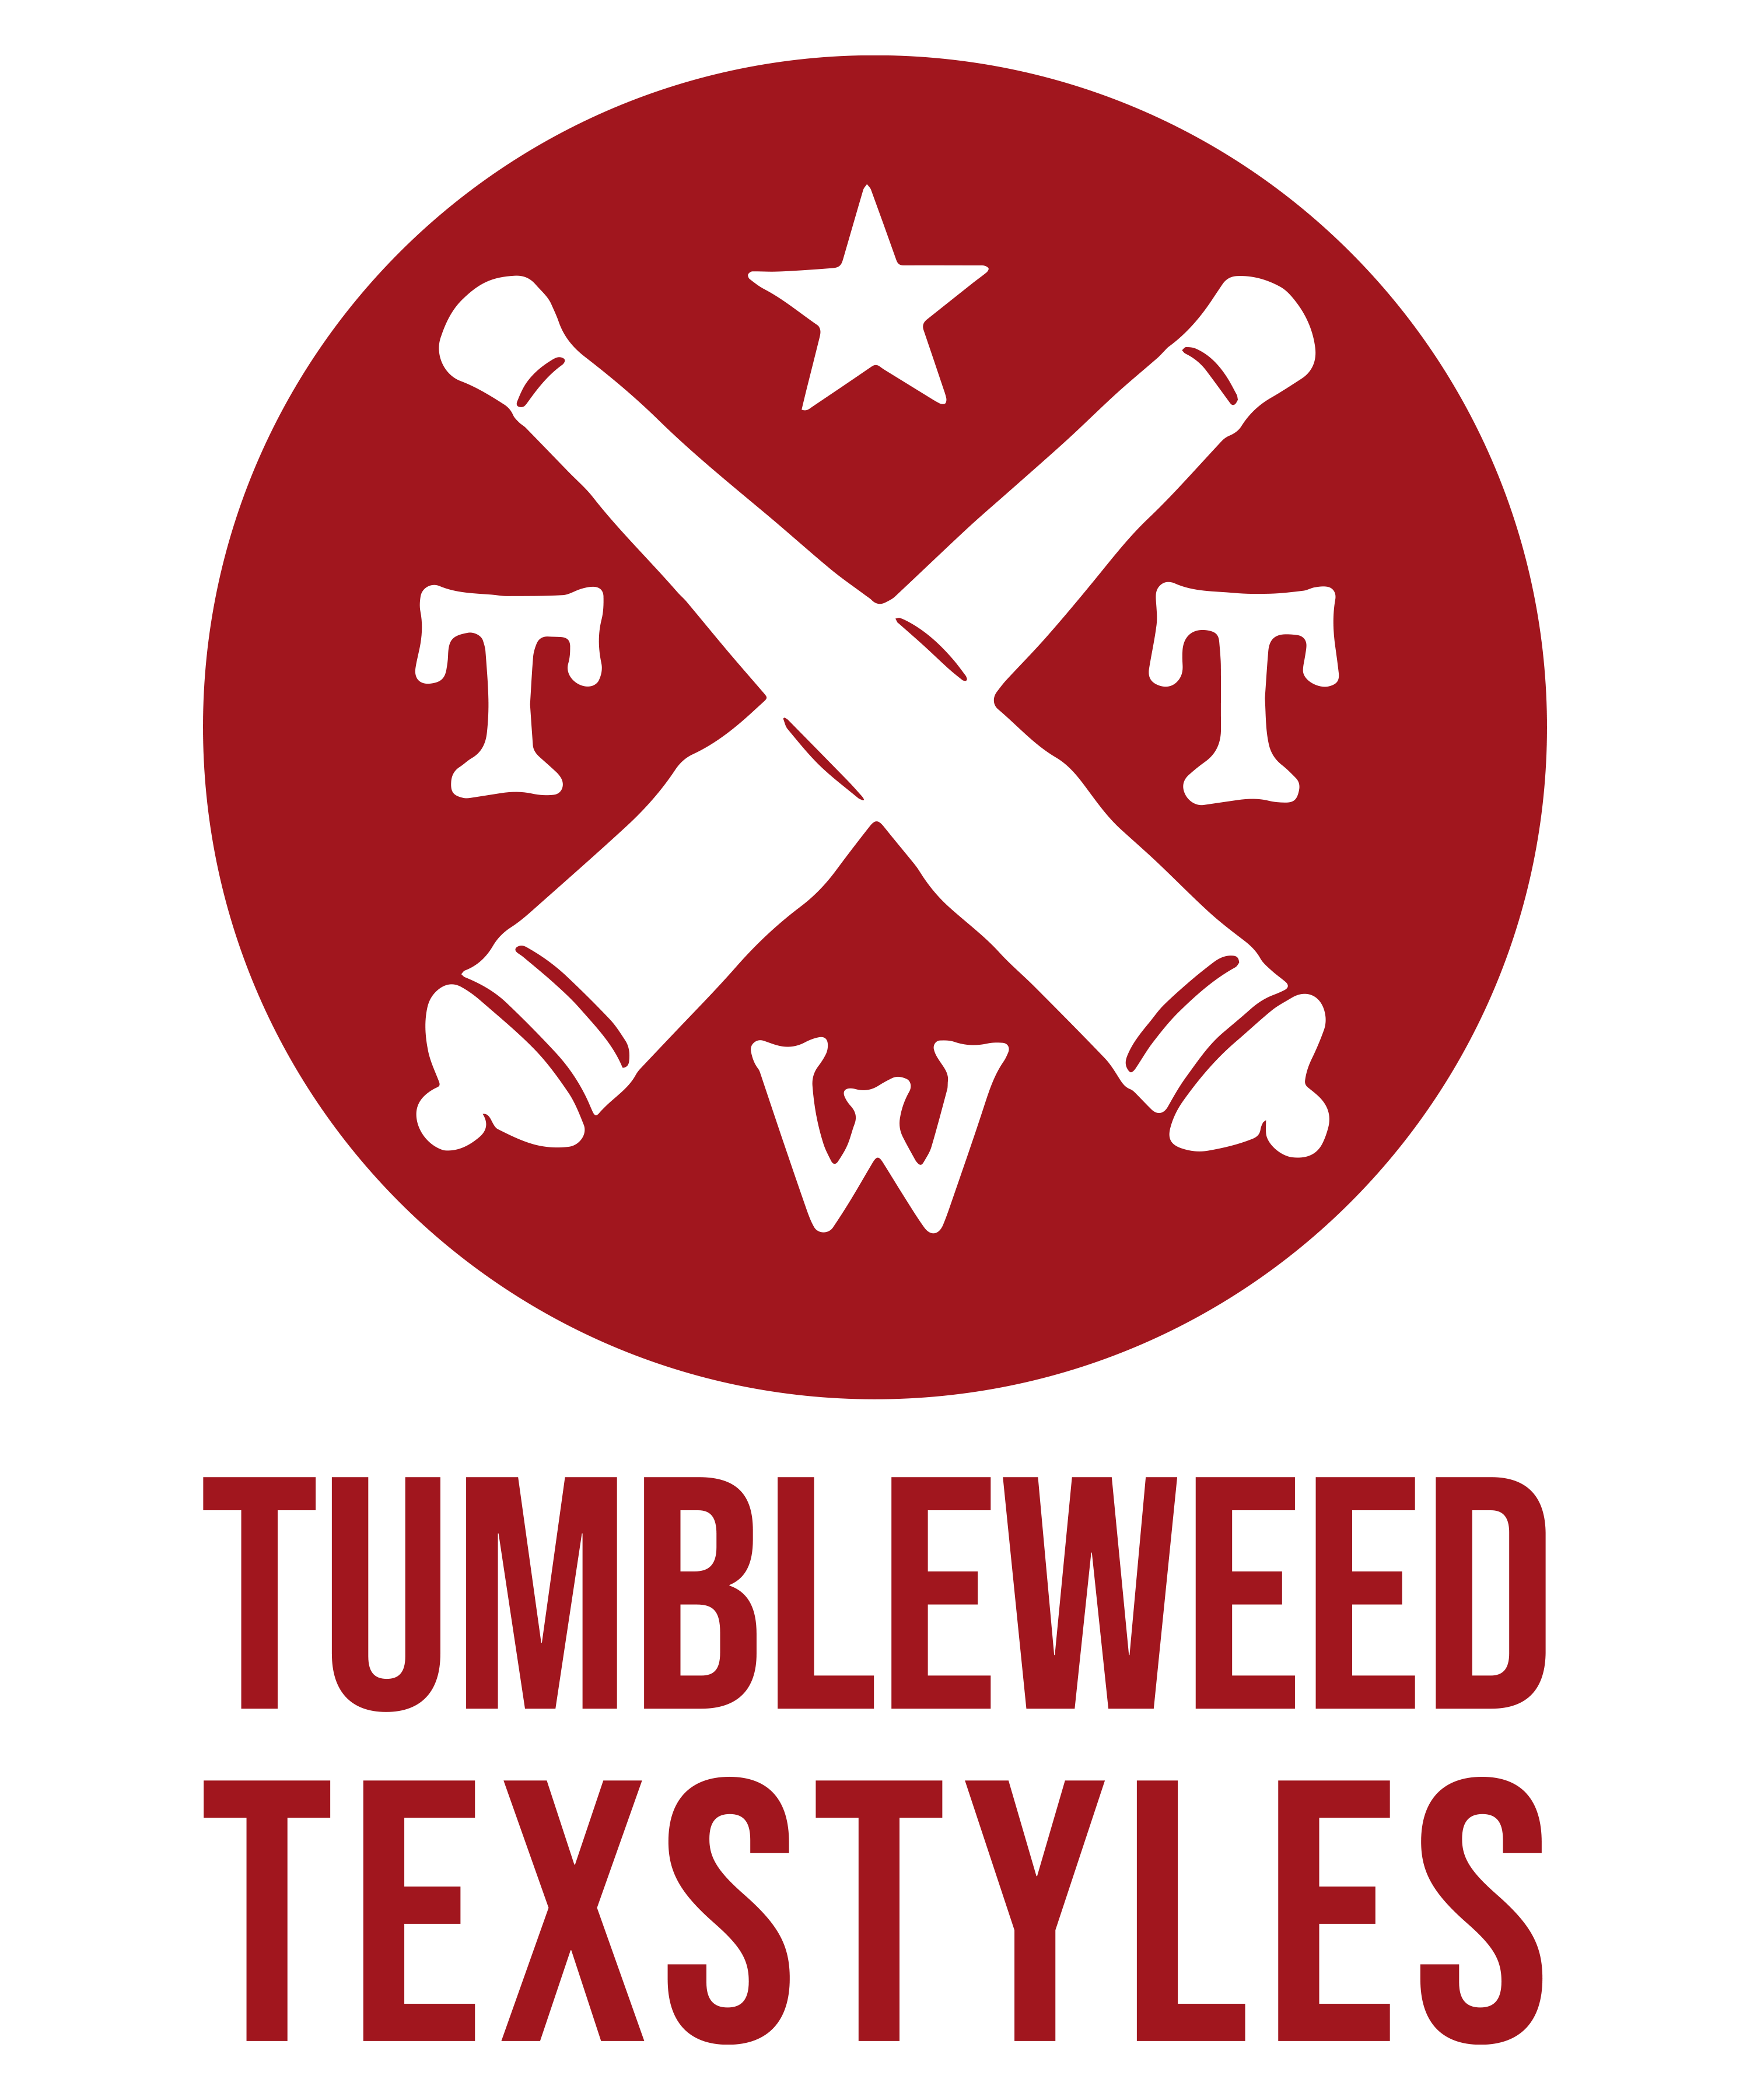 Tumbleweed Texstyles logo